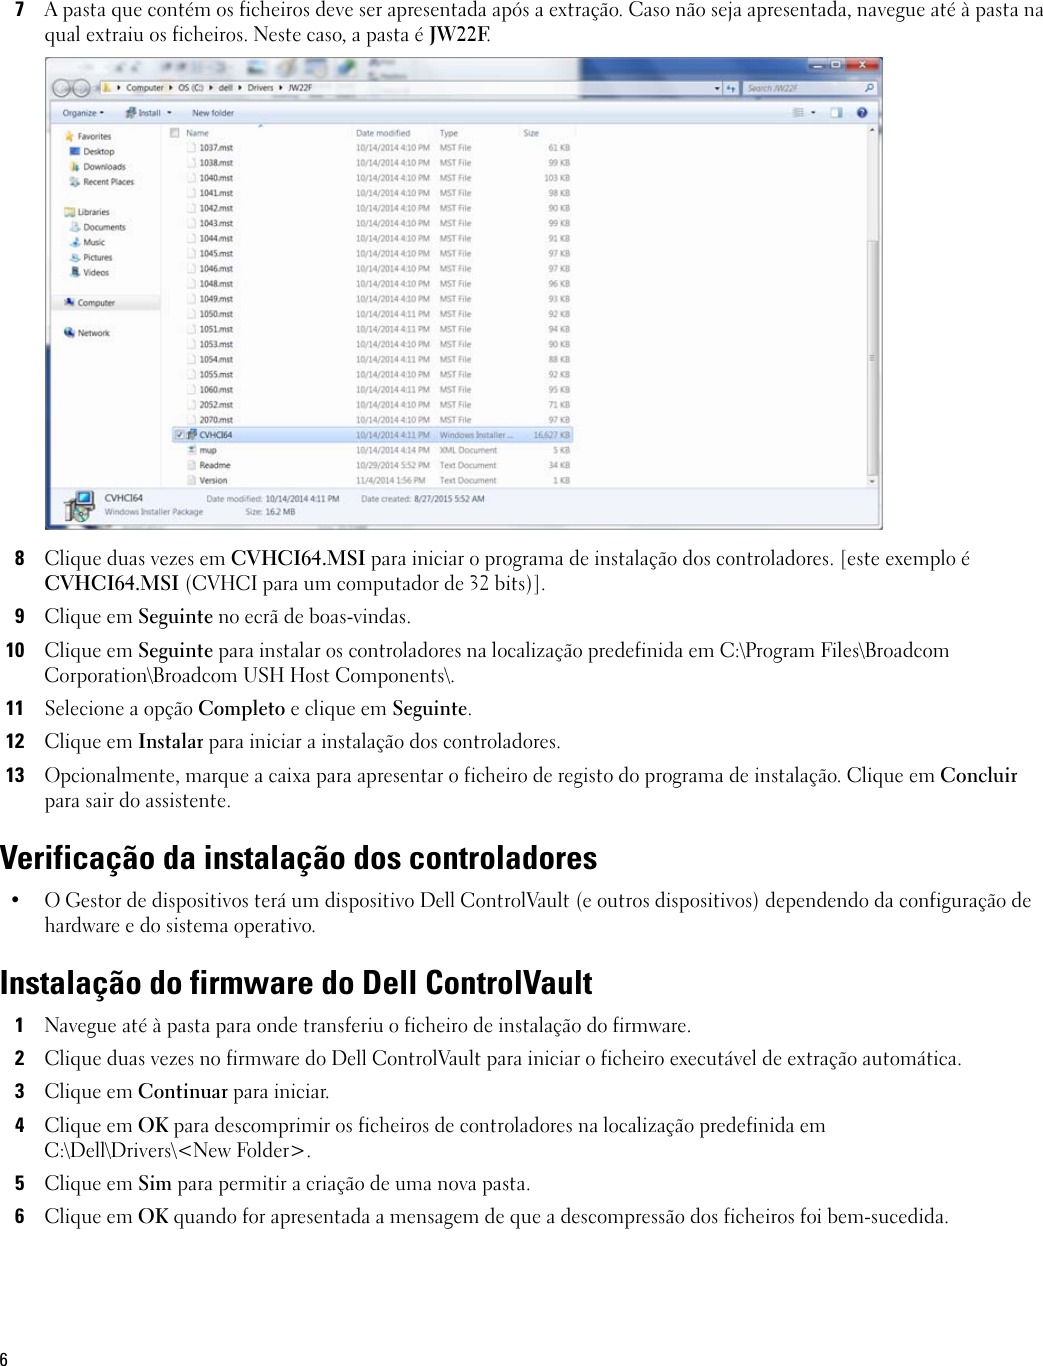 Page 6 of 8 - Dell Dell-dp-endpt-security-suite-enterprise Atualização Dos Controladores E Firmware Do ControlVault User Manual AtualizaÃ§Ã£o Control Vault User's Guide17 Pt-pt